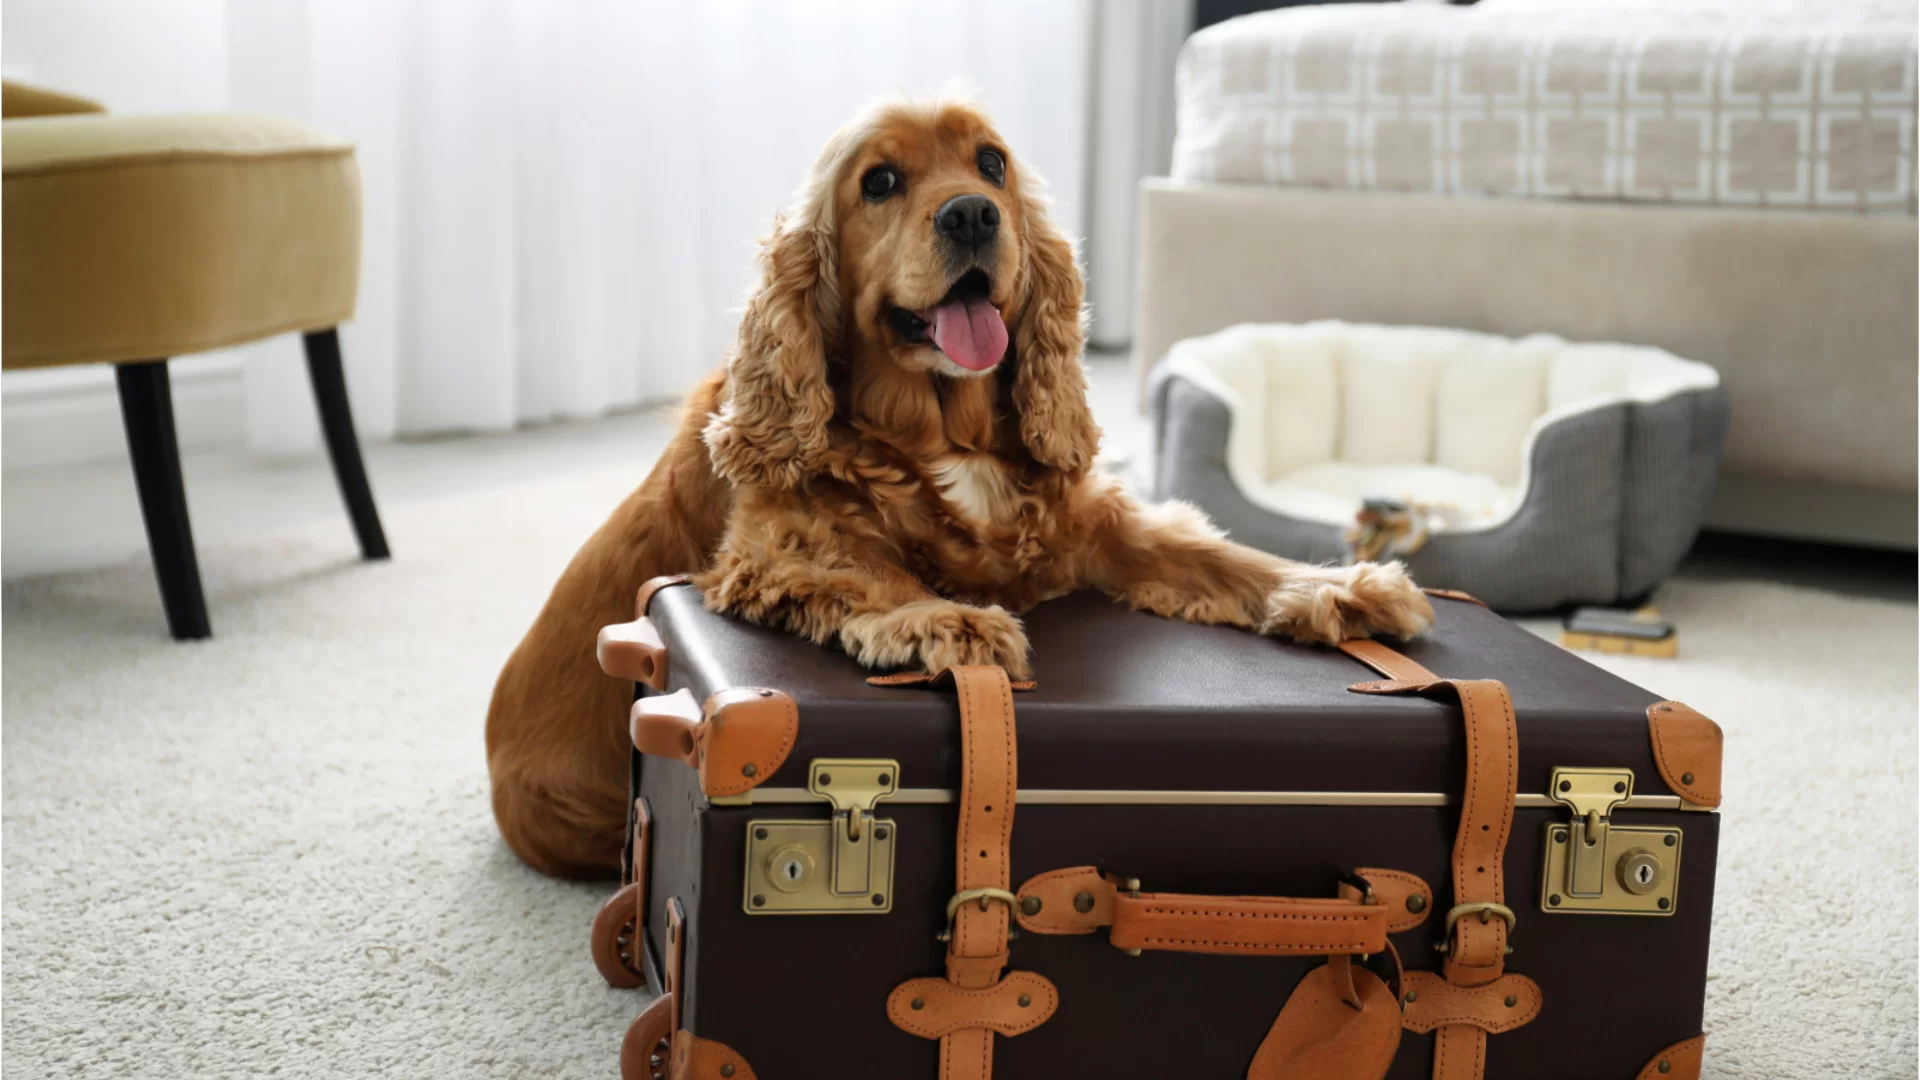 Viajar con perros: los hoteles que admiten mascotas están en auge